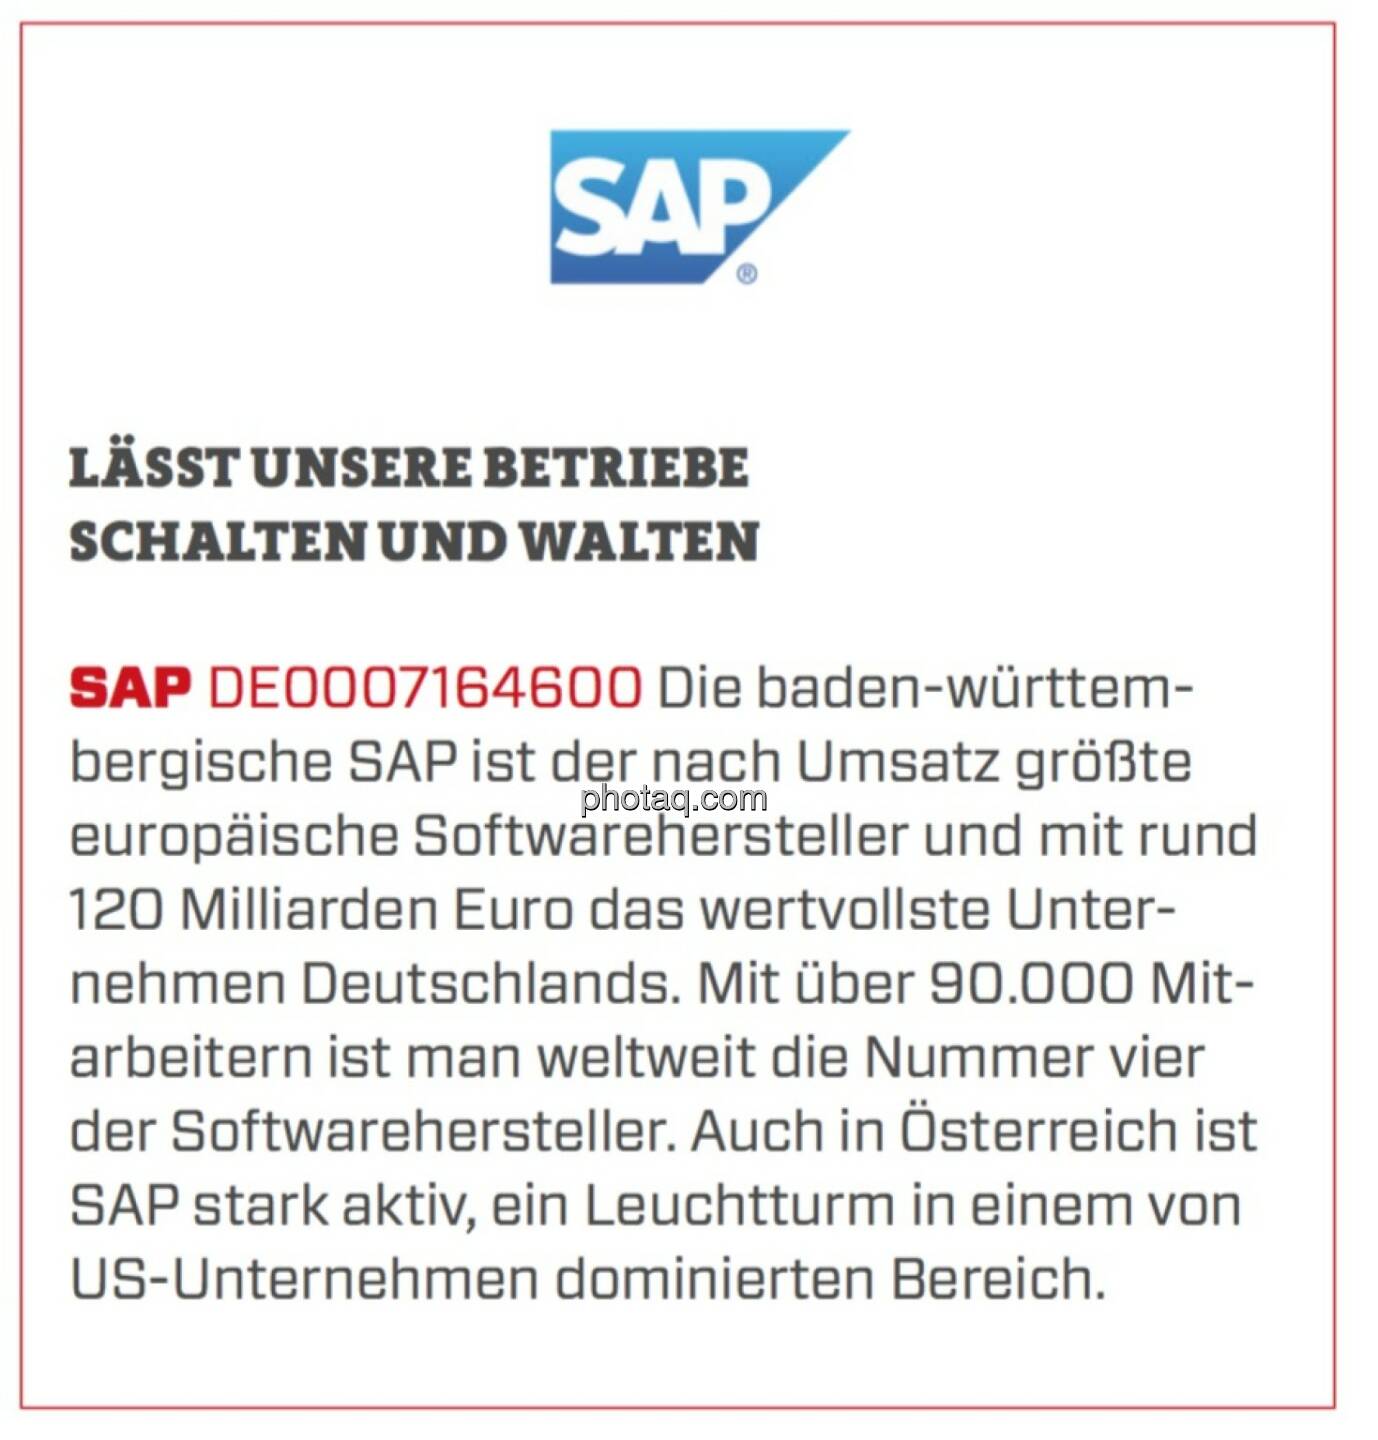 SAP - Lässt unsere Betriebe schalten und walten: Die baden-württembergische SAP ist der nach Umsatz größte europäische Softwarehersteller und mit rund 120 Milliarden Euro das wertvollste Unternehmen Deutschlands. Mit über 90.000 Mitarbeitern ist man weltweit die Nummer vier der Softwarehersteller. Auch in Österreich ist SAP stark aktiv, ein Leuchtturm in einem von US-Unternehmen dominierten Bereich.